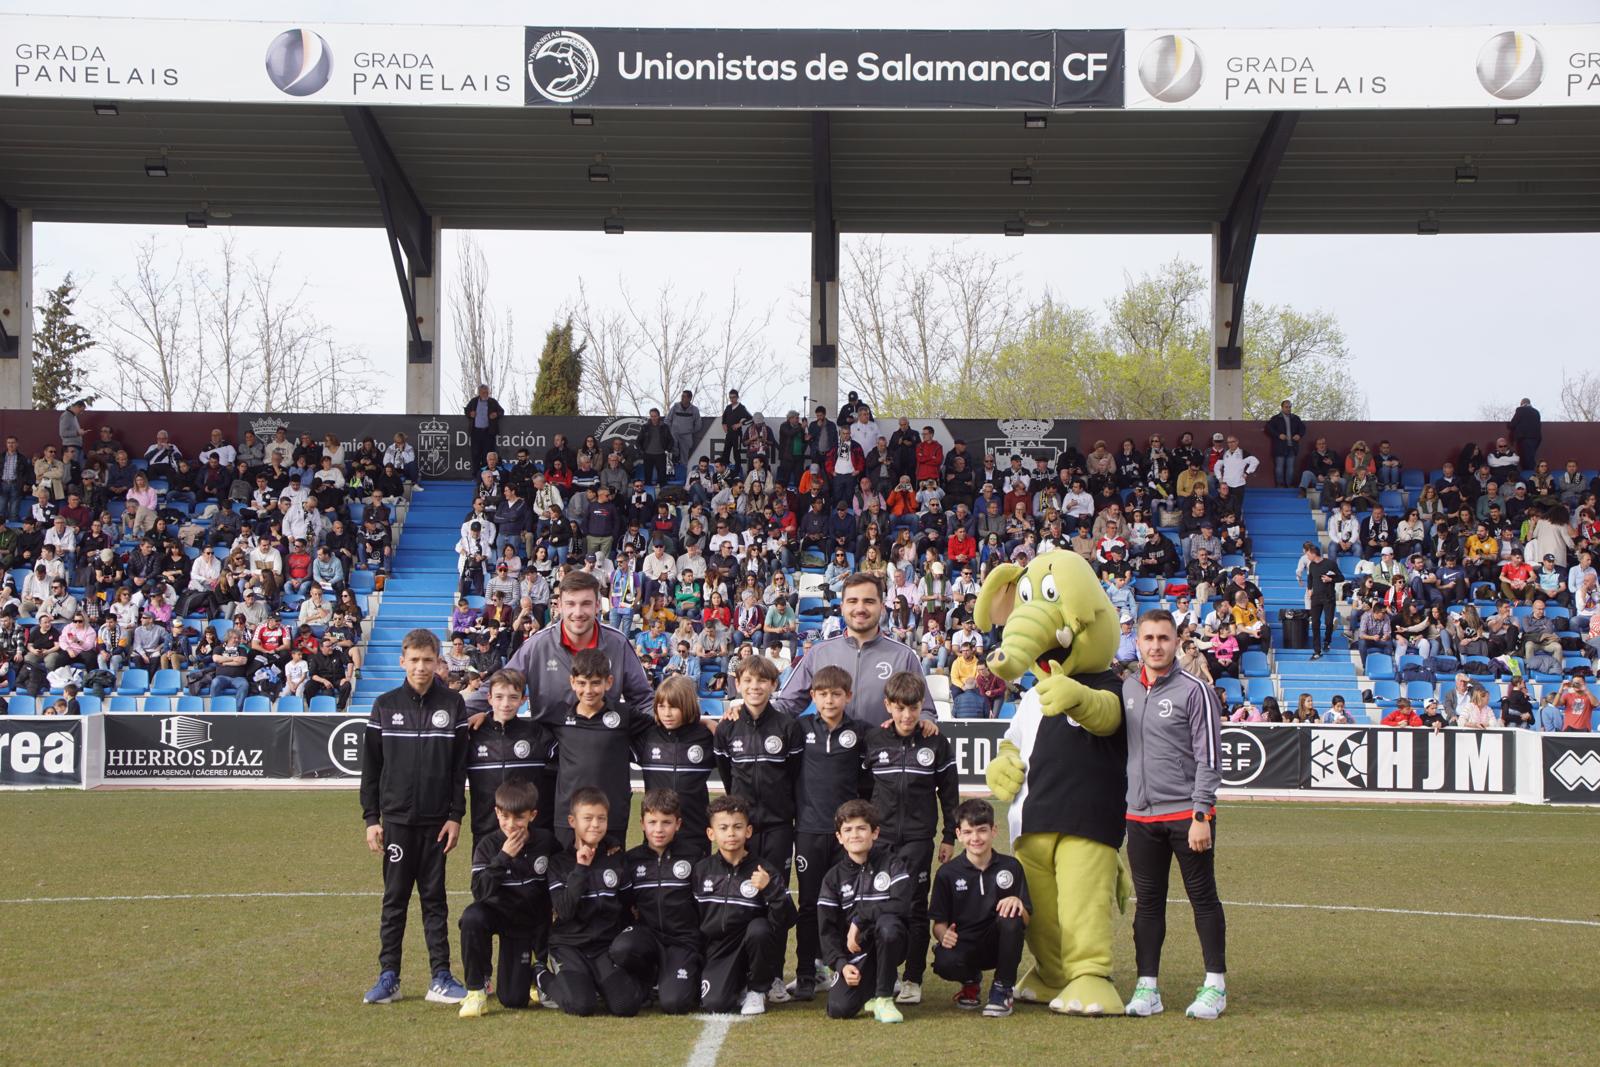 GALERÍA  Presentación fútbol 7 de Unionistas. Fotos Juanes (13)